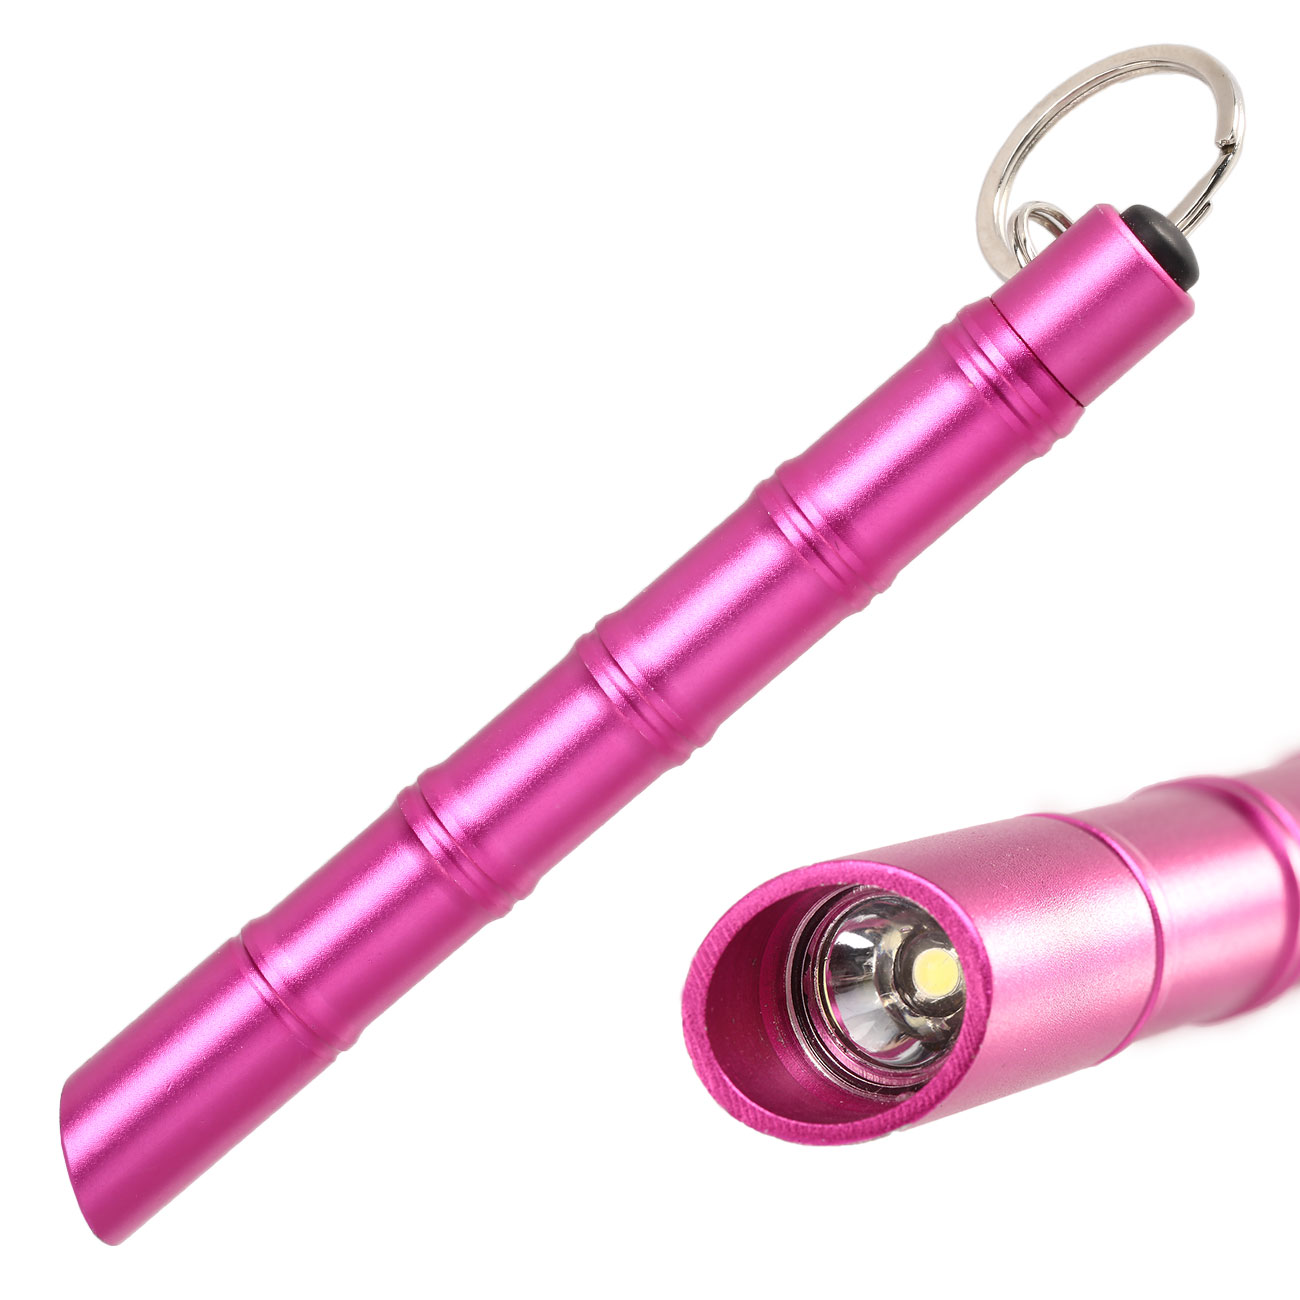 Kubotan Light Defender mit integrieter LED-Taschenlampe und Schlüsselring pink